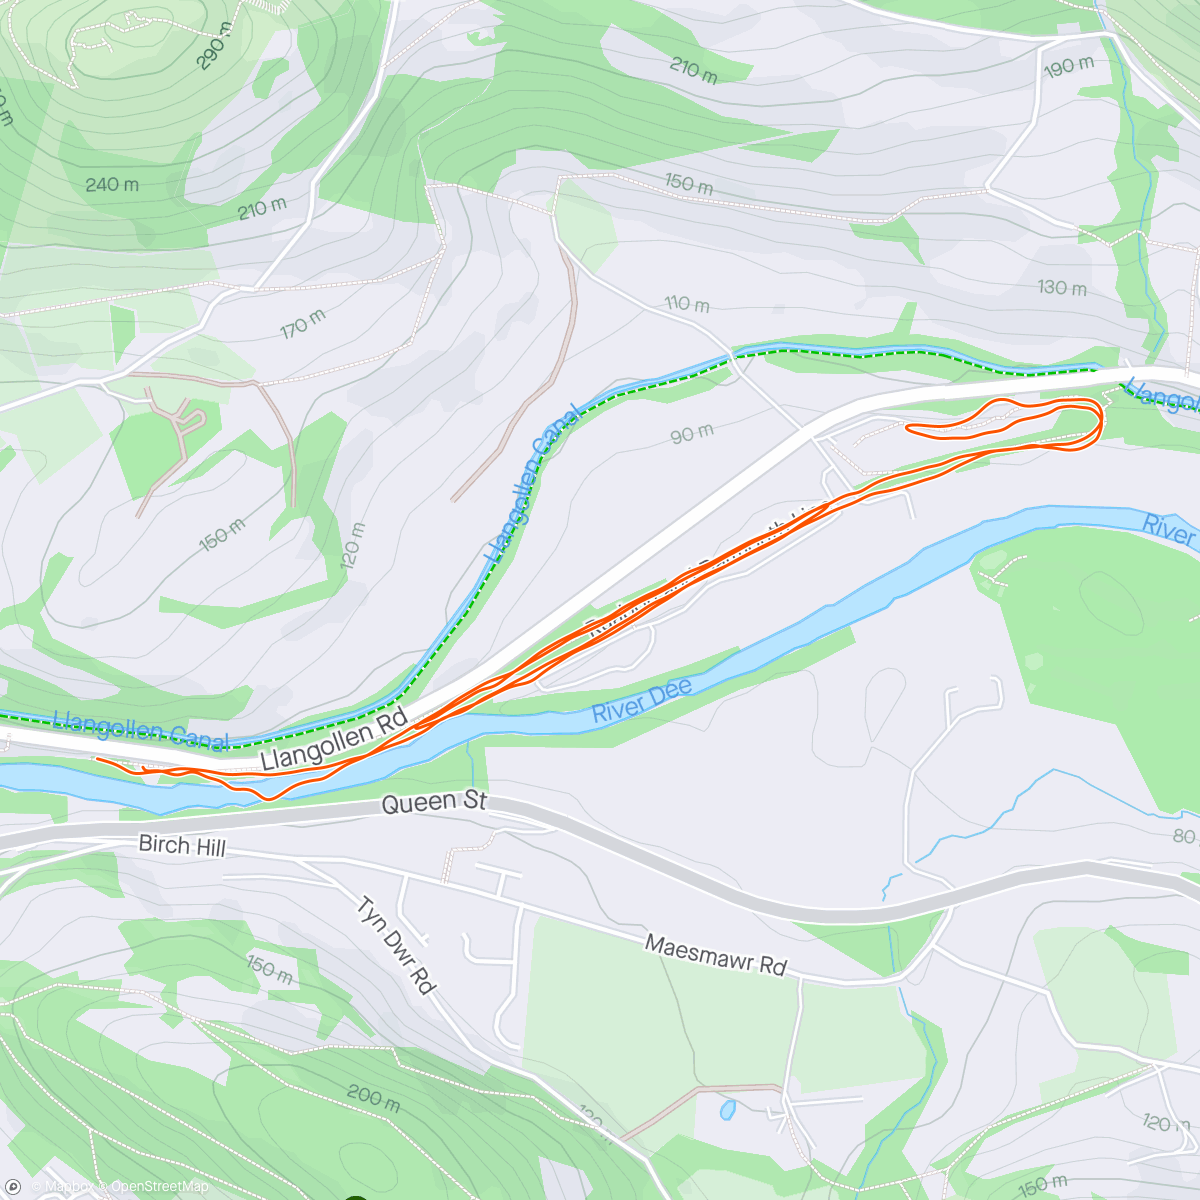 「Llangollan park run」活動的地圖